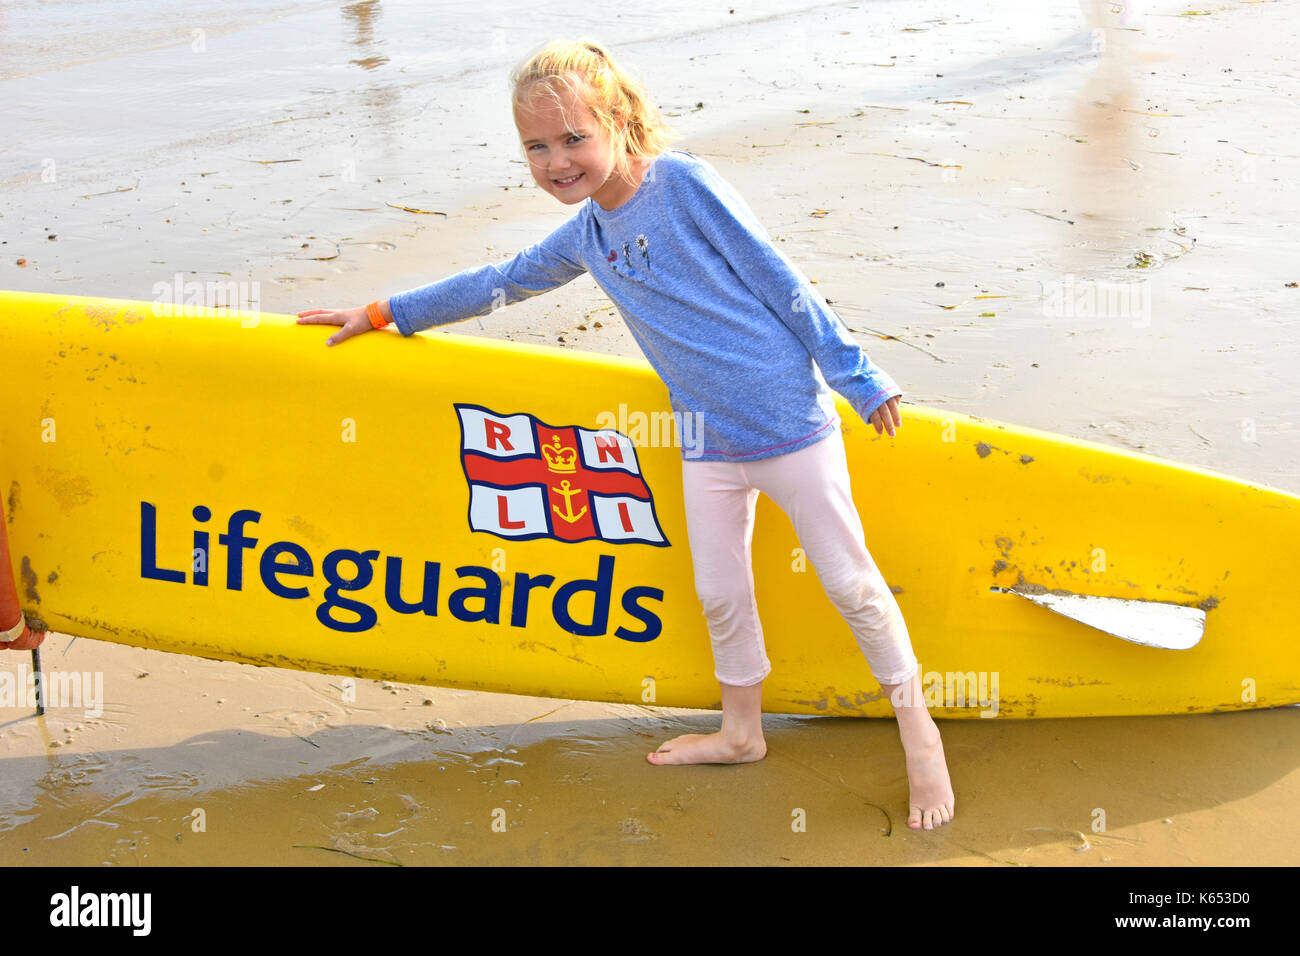 Sechs Jahre alten Mädchen posiert am Meer neben der RNLI Lifeguards surfboard Bewusstsein Idee von Baden im Meer gefahren kühlen Sommer Urlaub Strand Dorset UK Stockfoto